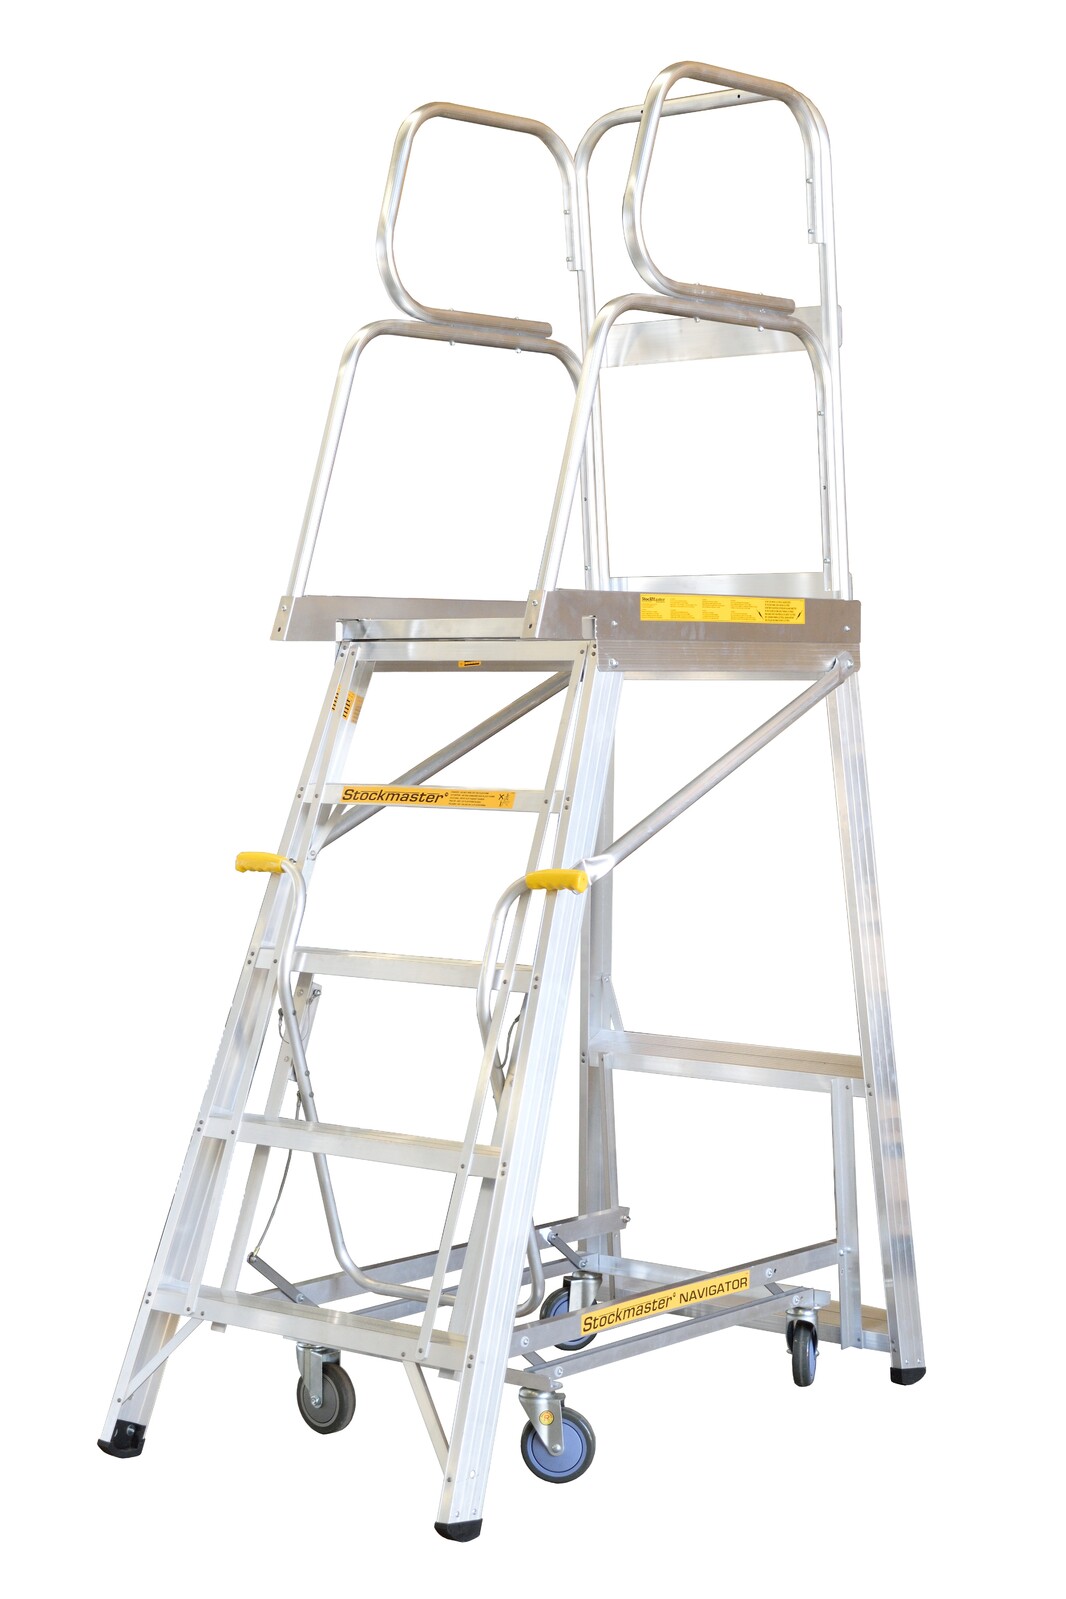 Stockmaster 150kg Rated Mobile Work Platform Ladder Navigator - 3.7m